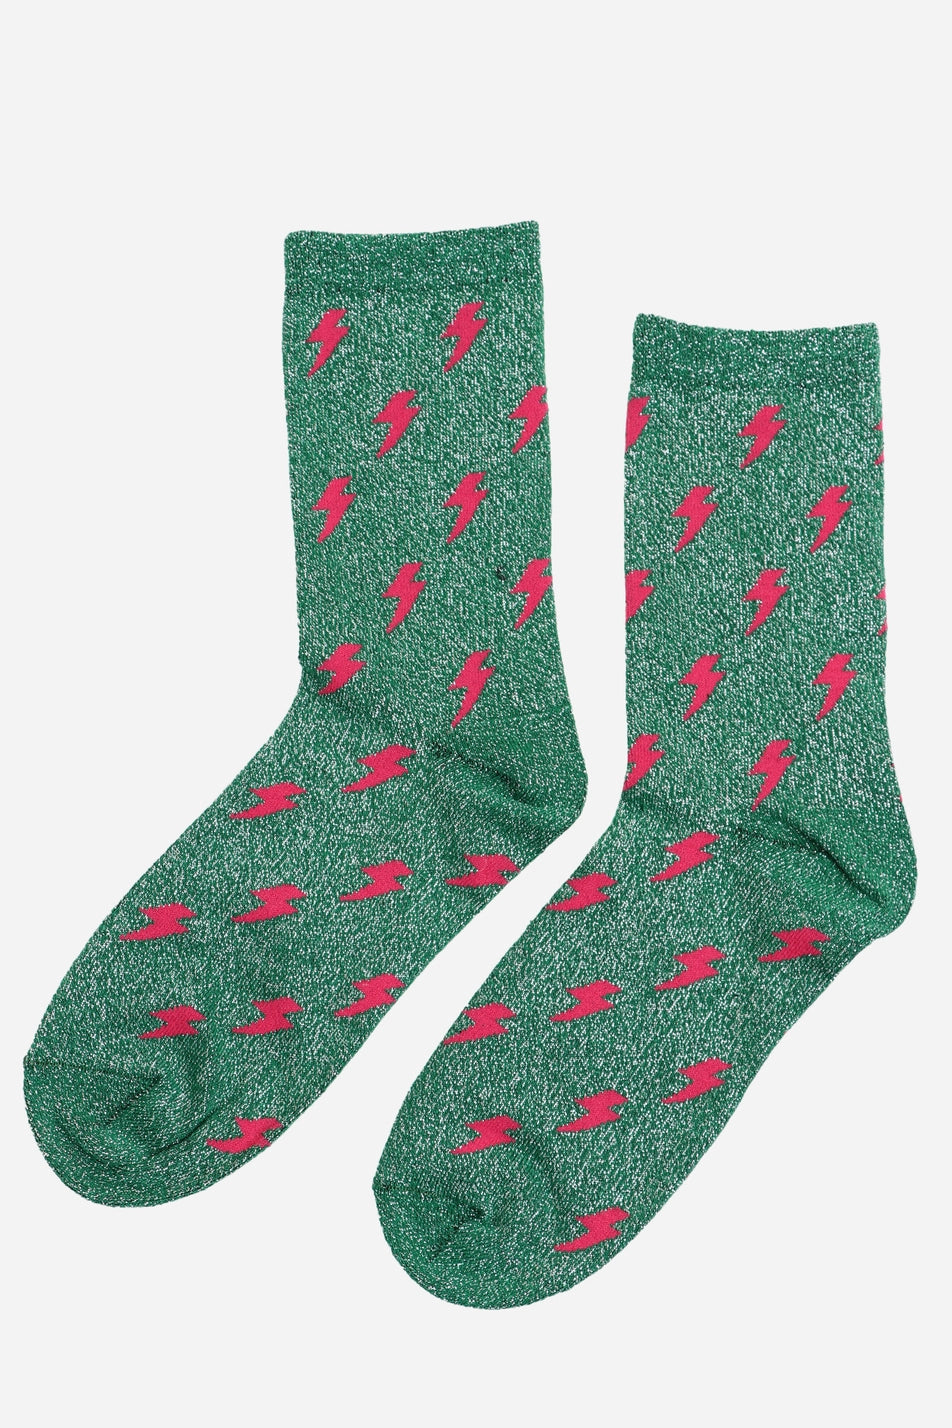 Green Pink Lighting Bolt Glitter Socks